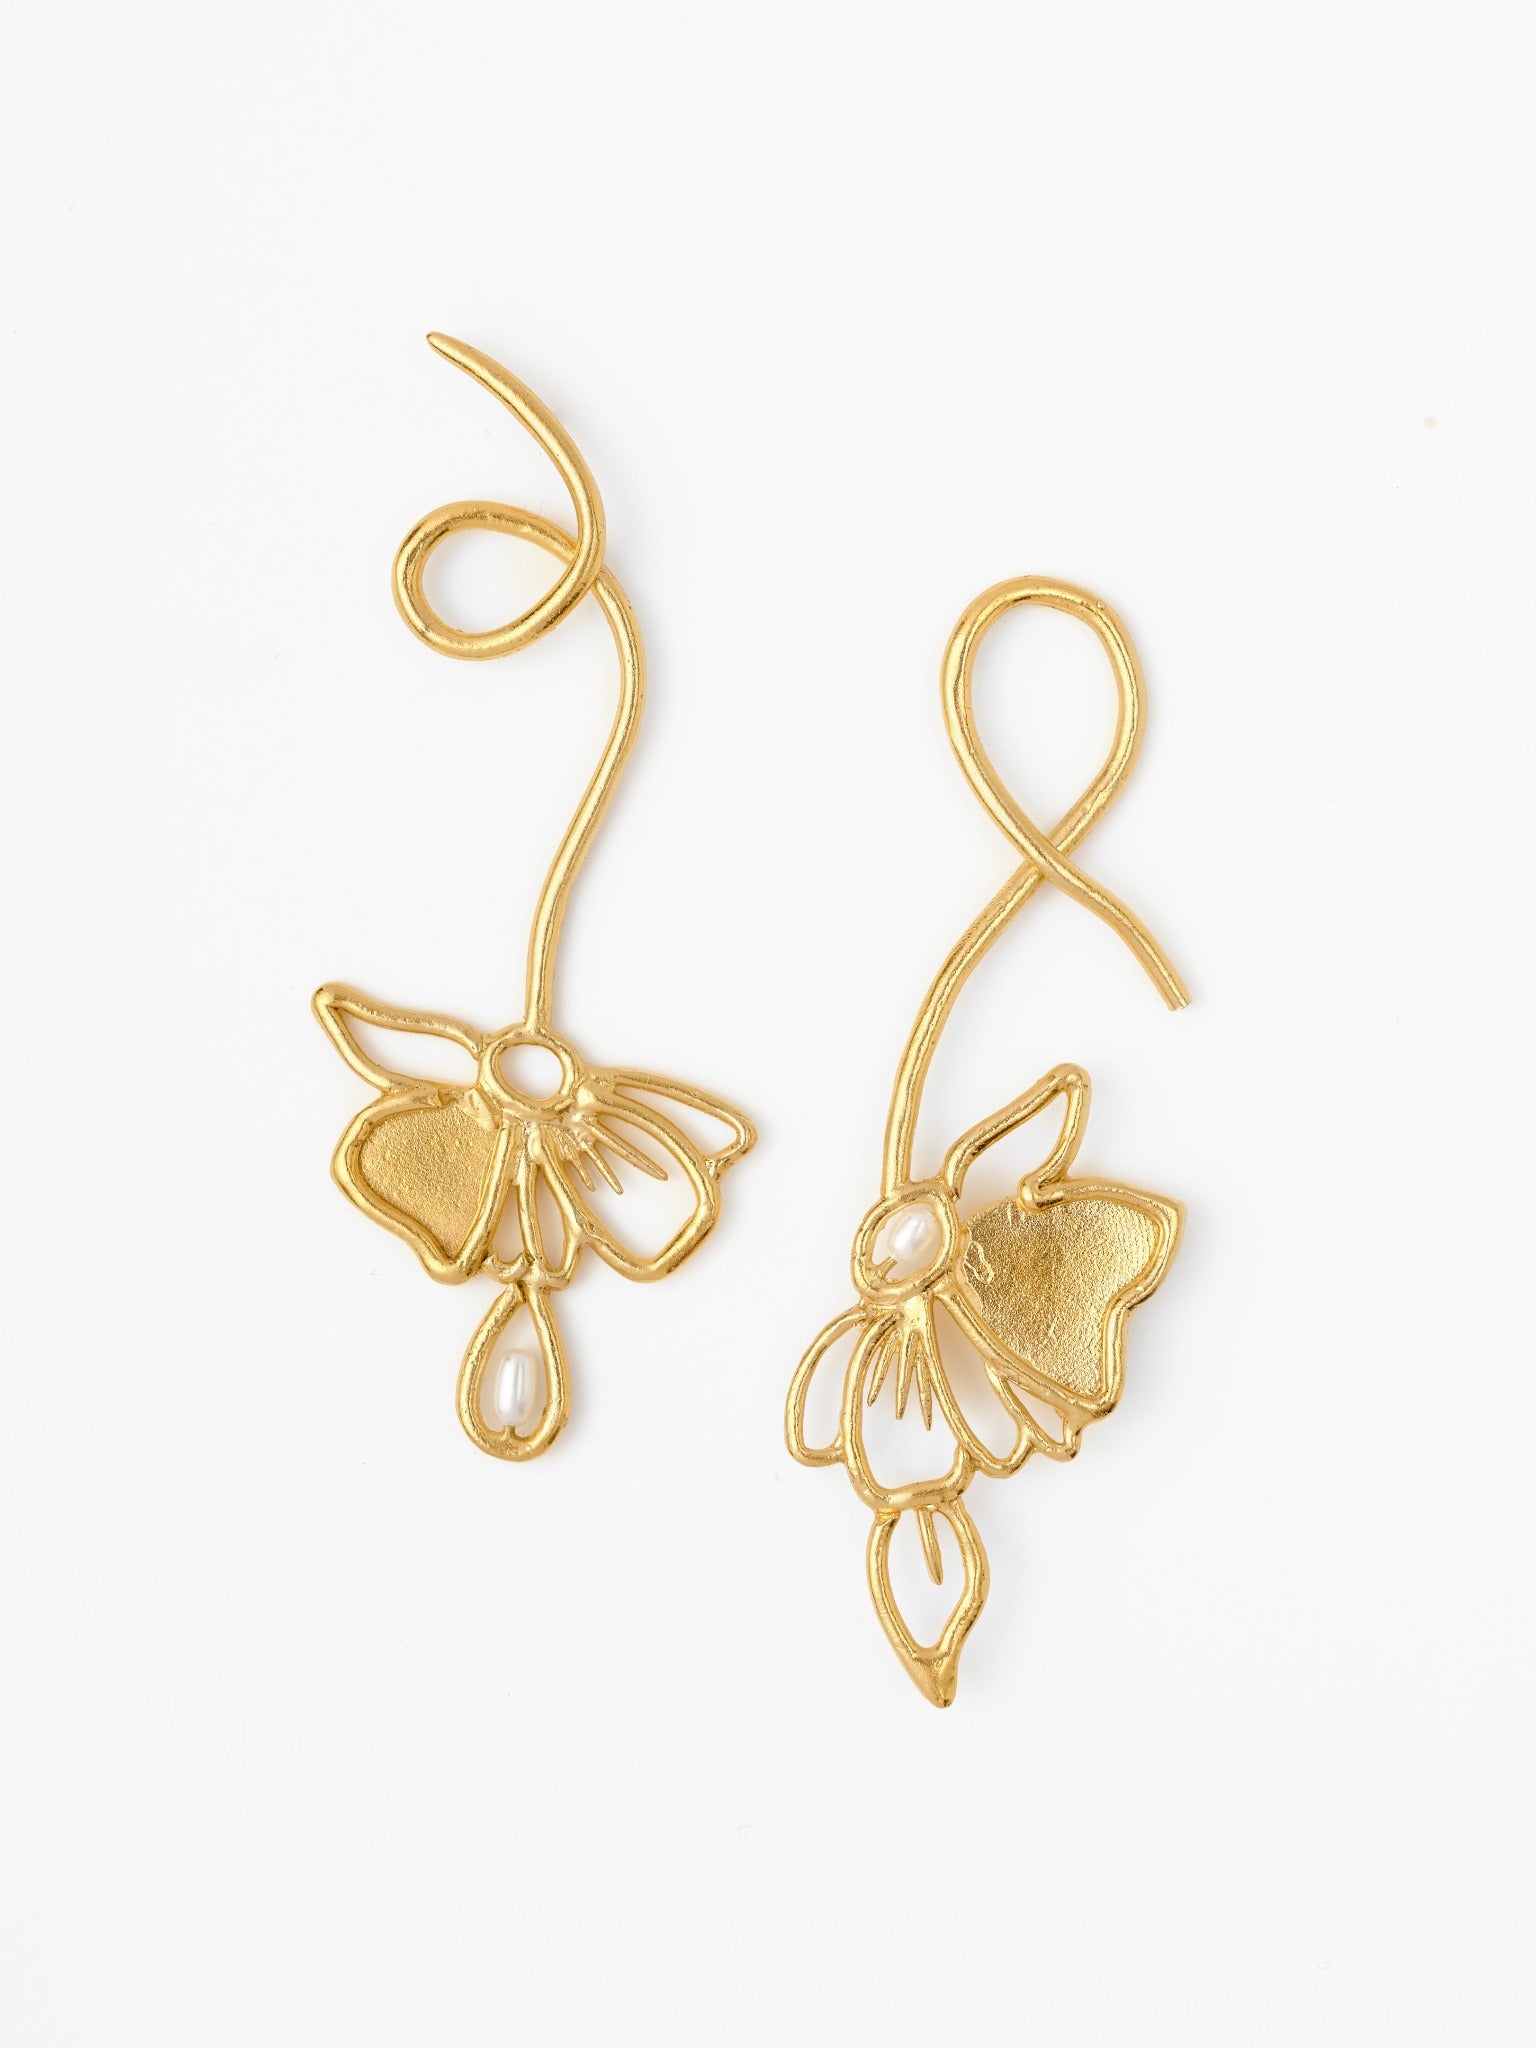 The Vine Blossom Earrings